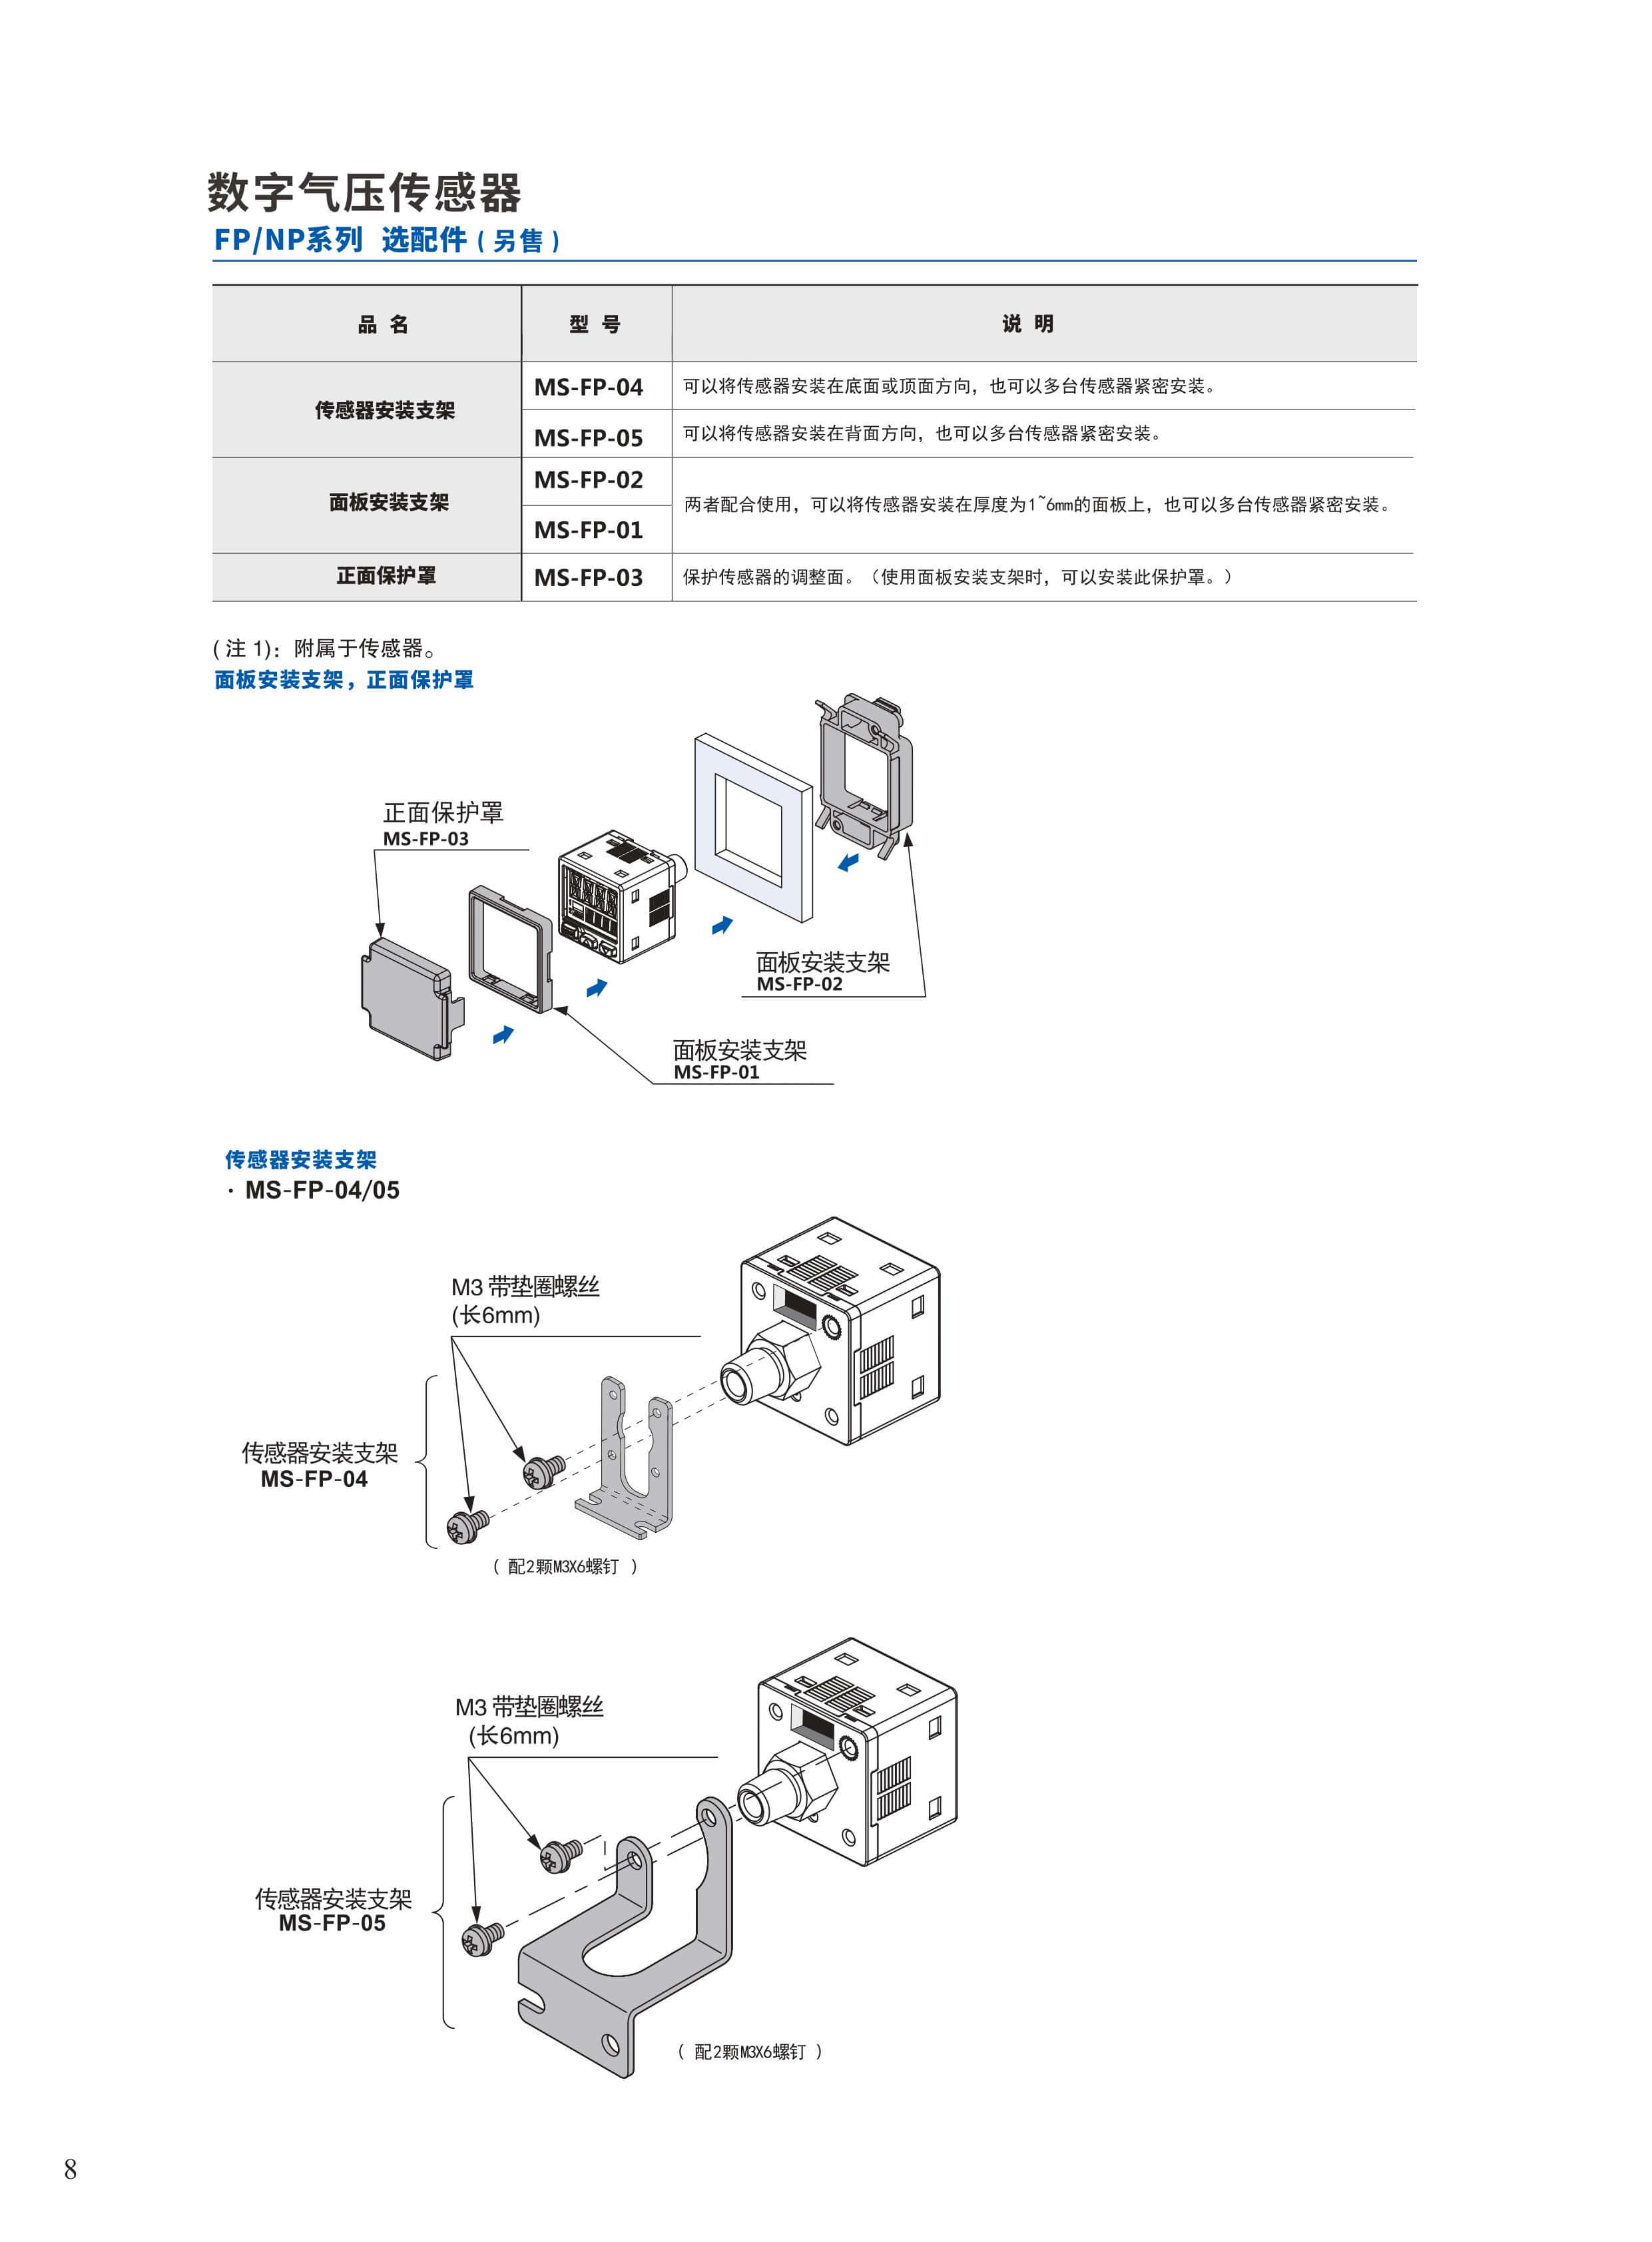 高精度陀螺仪传感器/AC伺服电机品牌/深圳市艾而特工业自动化设备有限公司